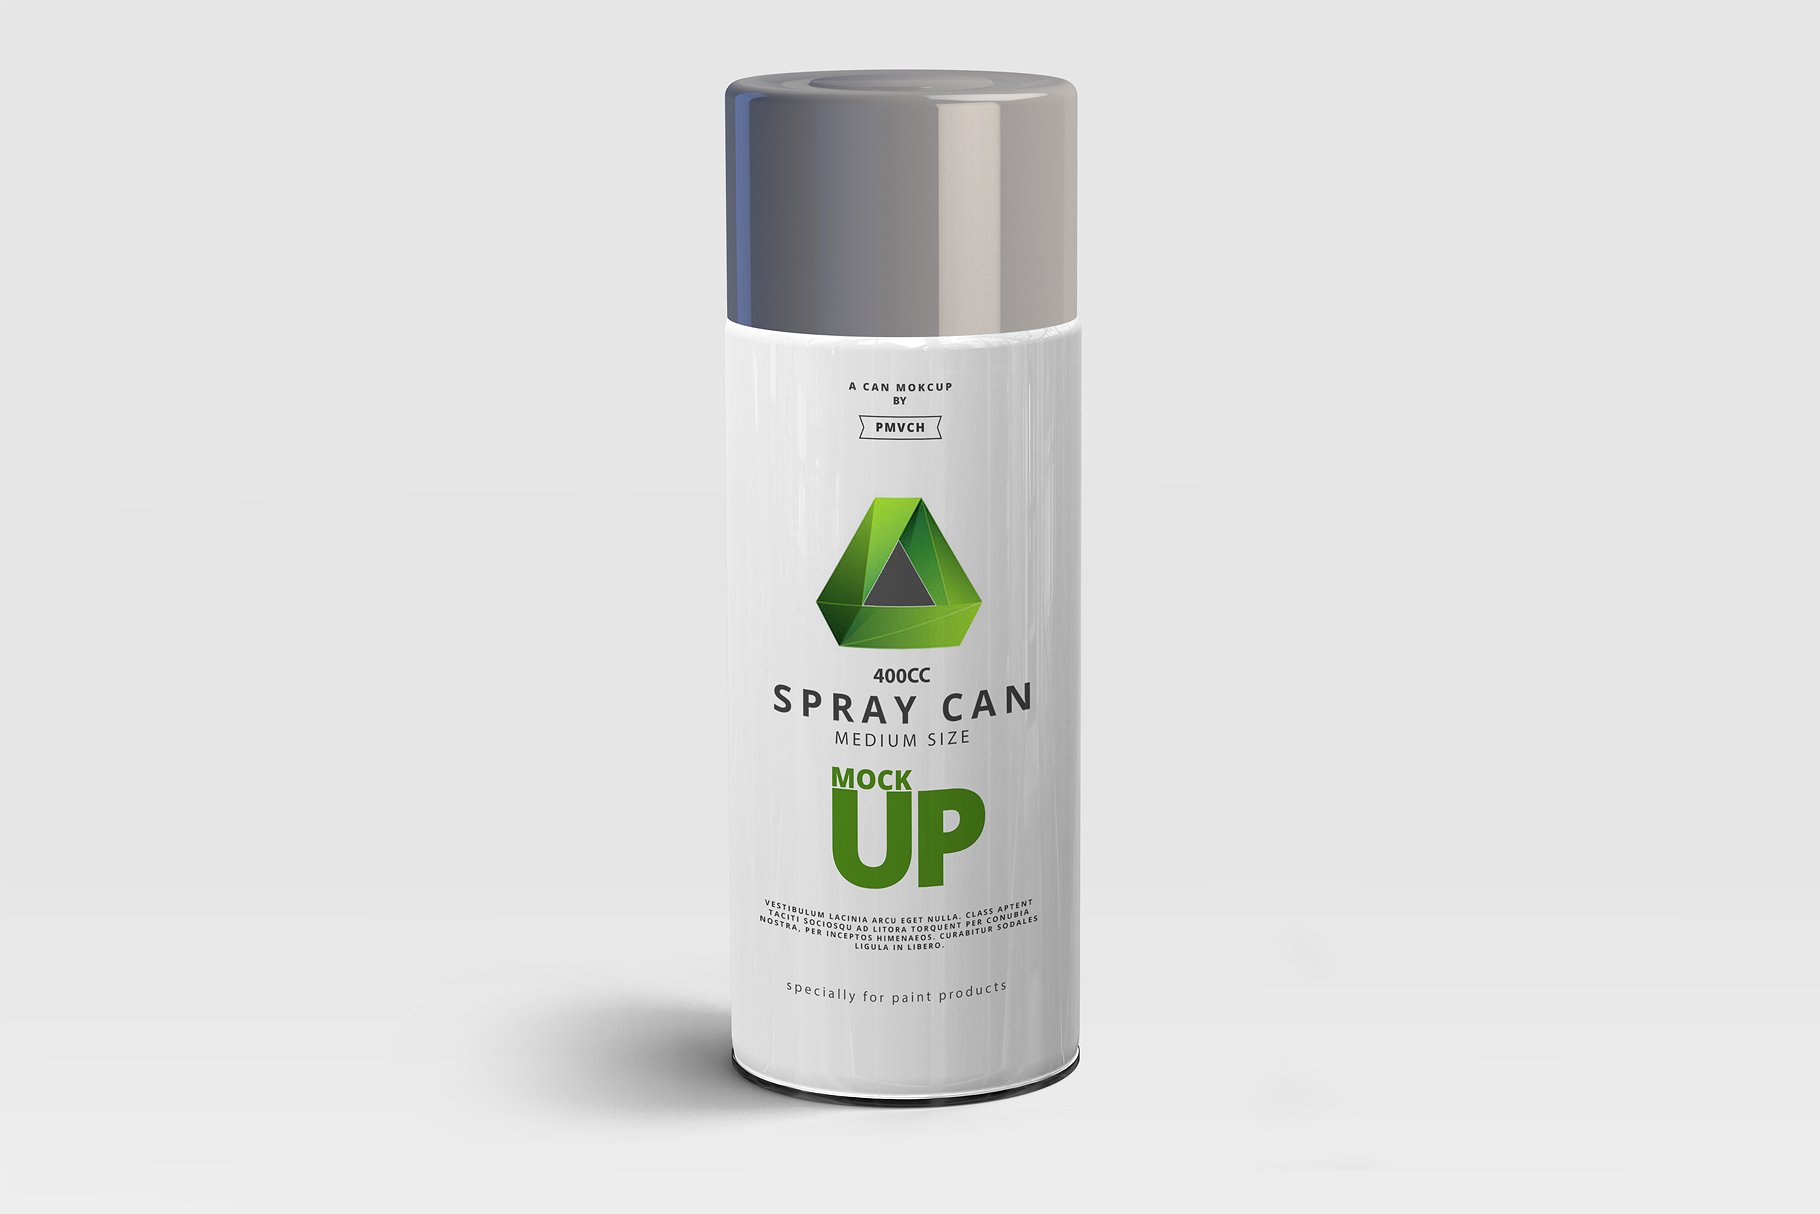 中等尺寸的喷雾罐展示样机 Spray Can Mockup – Medium Size [psd]插图(2)